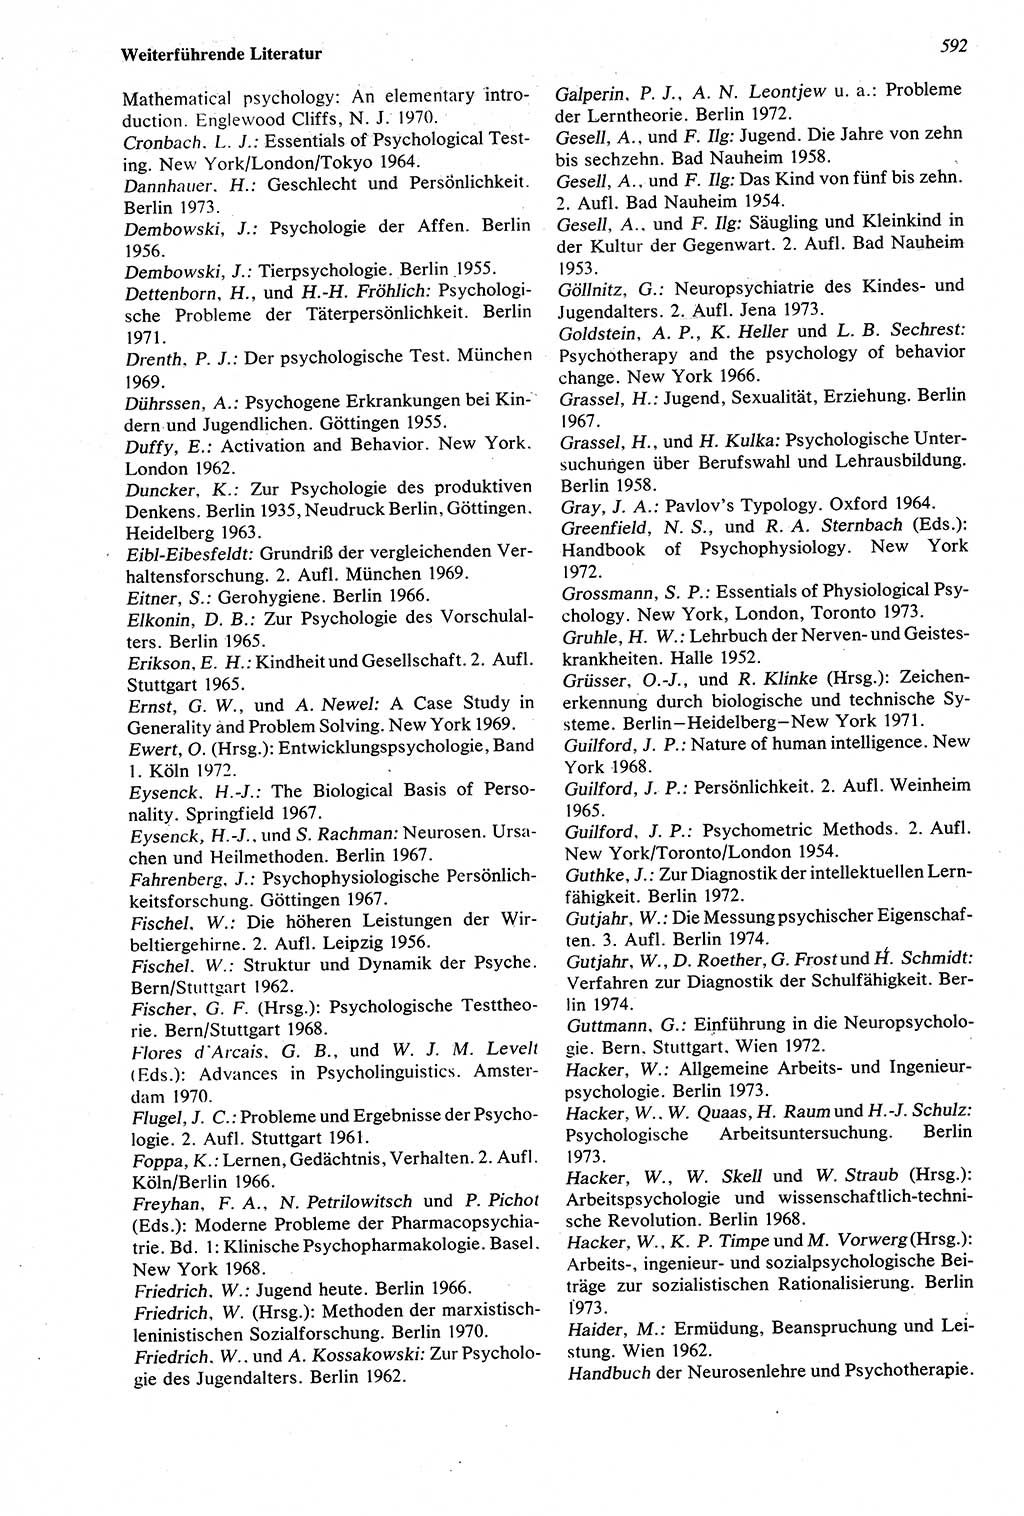 Wörterbuch der Psychologie [Deutsche Demokratische Republik (DDR)] 1976, Seite 592 (Wb. Psych. DDR 1976, S. 592)